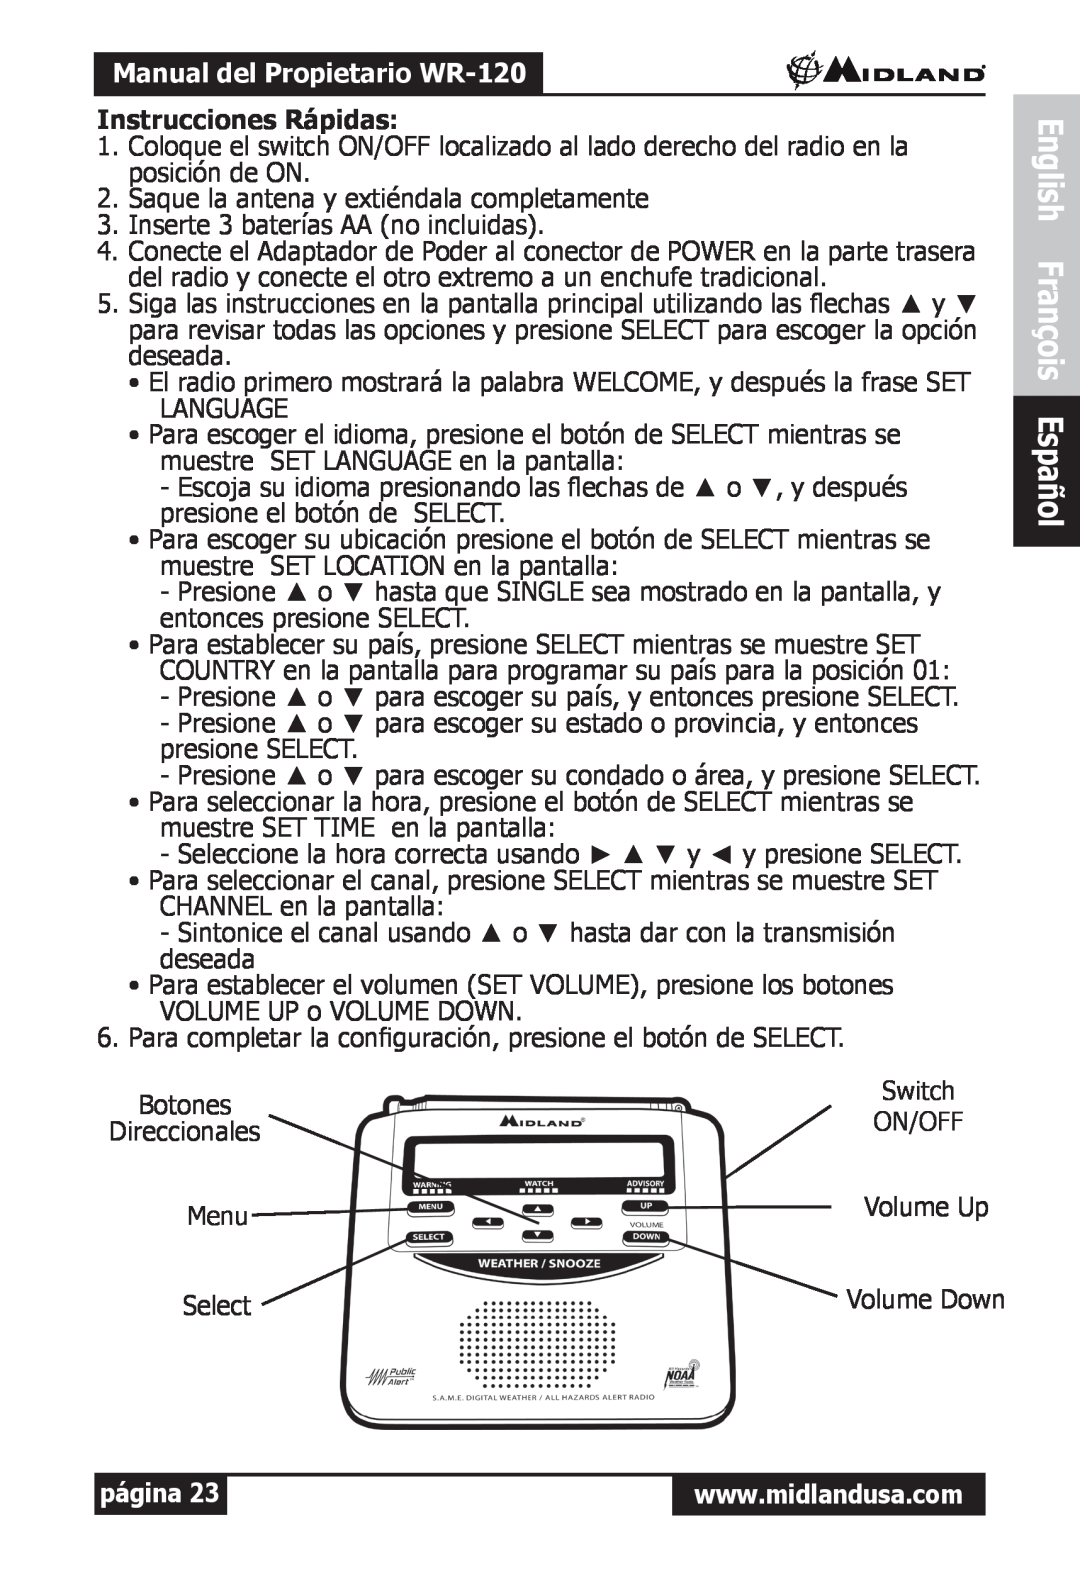 Midland Radio owner manual English François Español, Manual del Propietario WR-120, Instrucciones Rápidas, página 